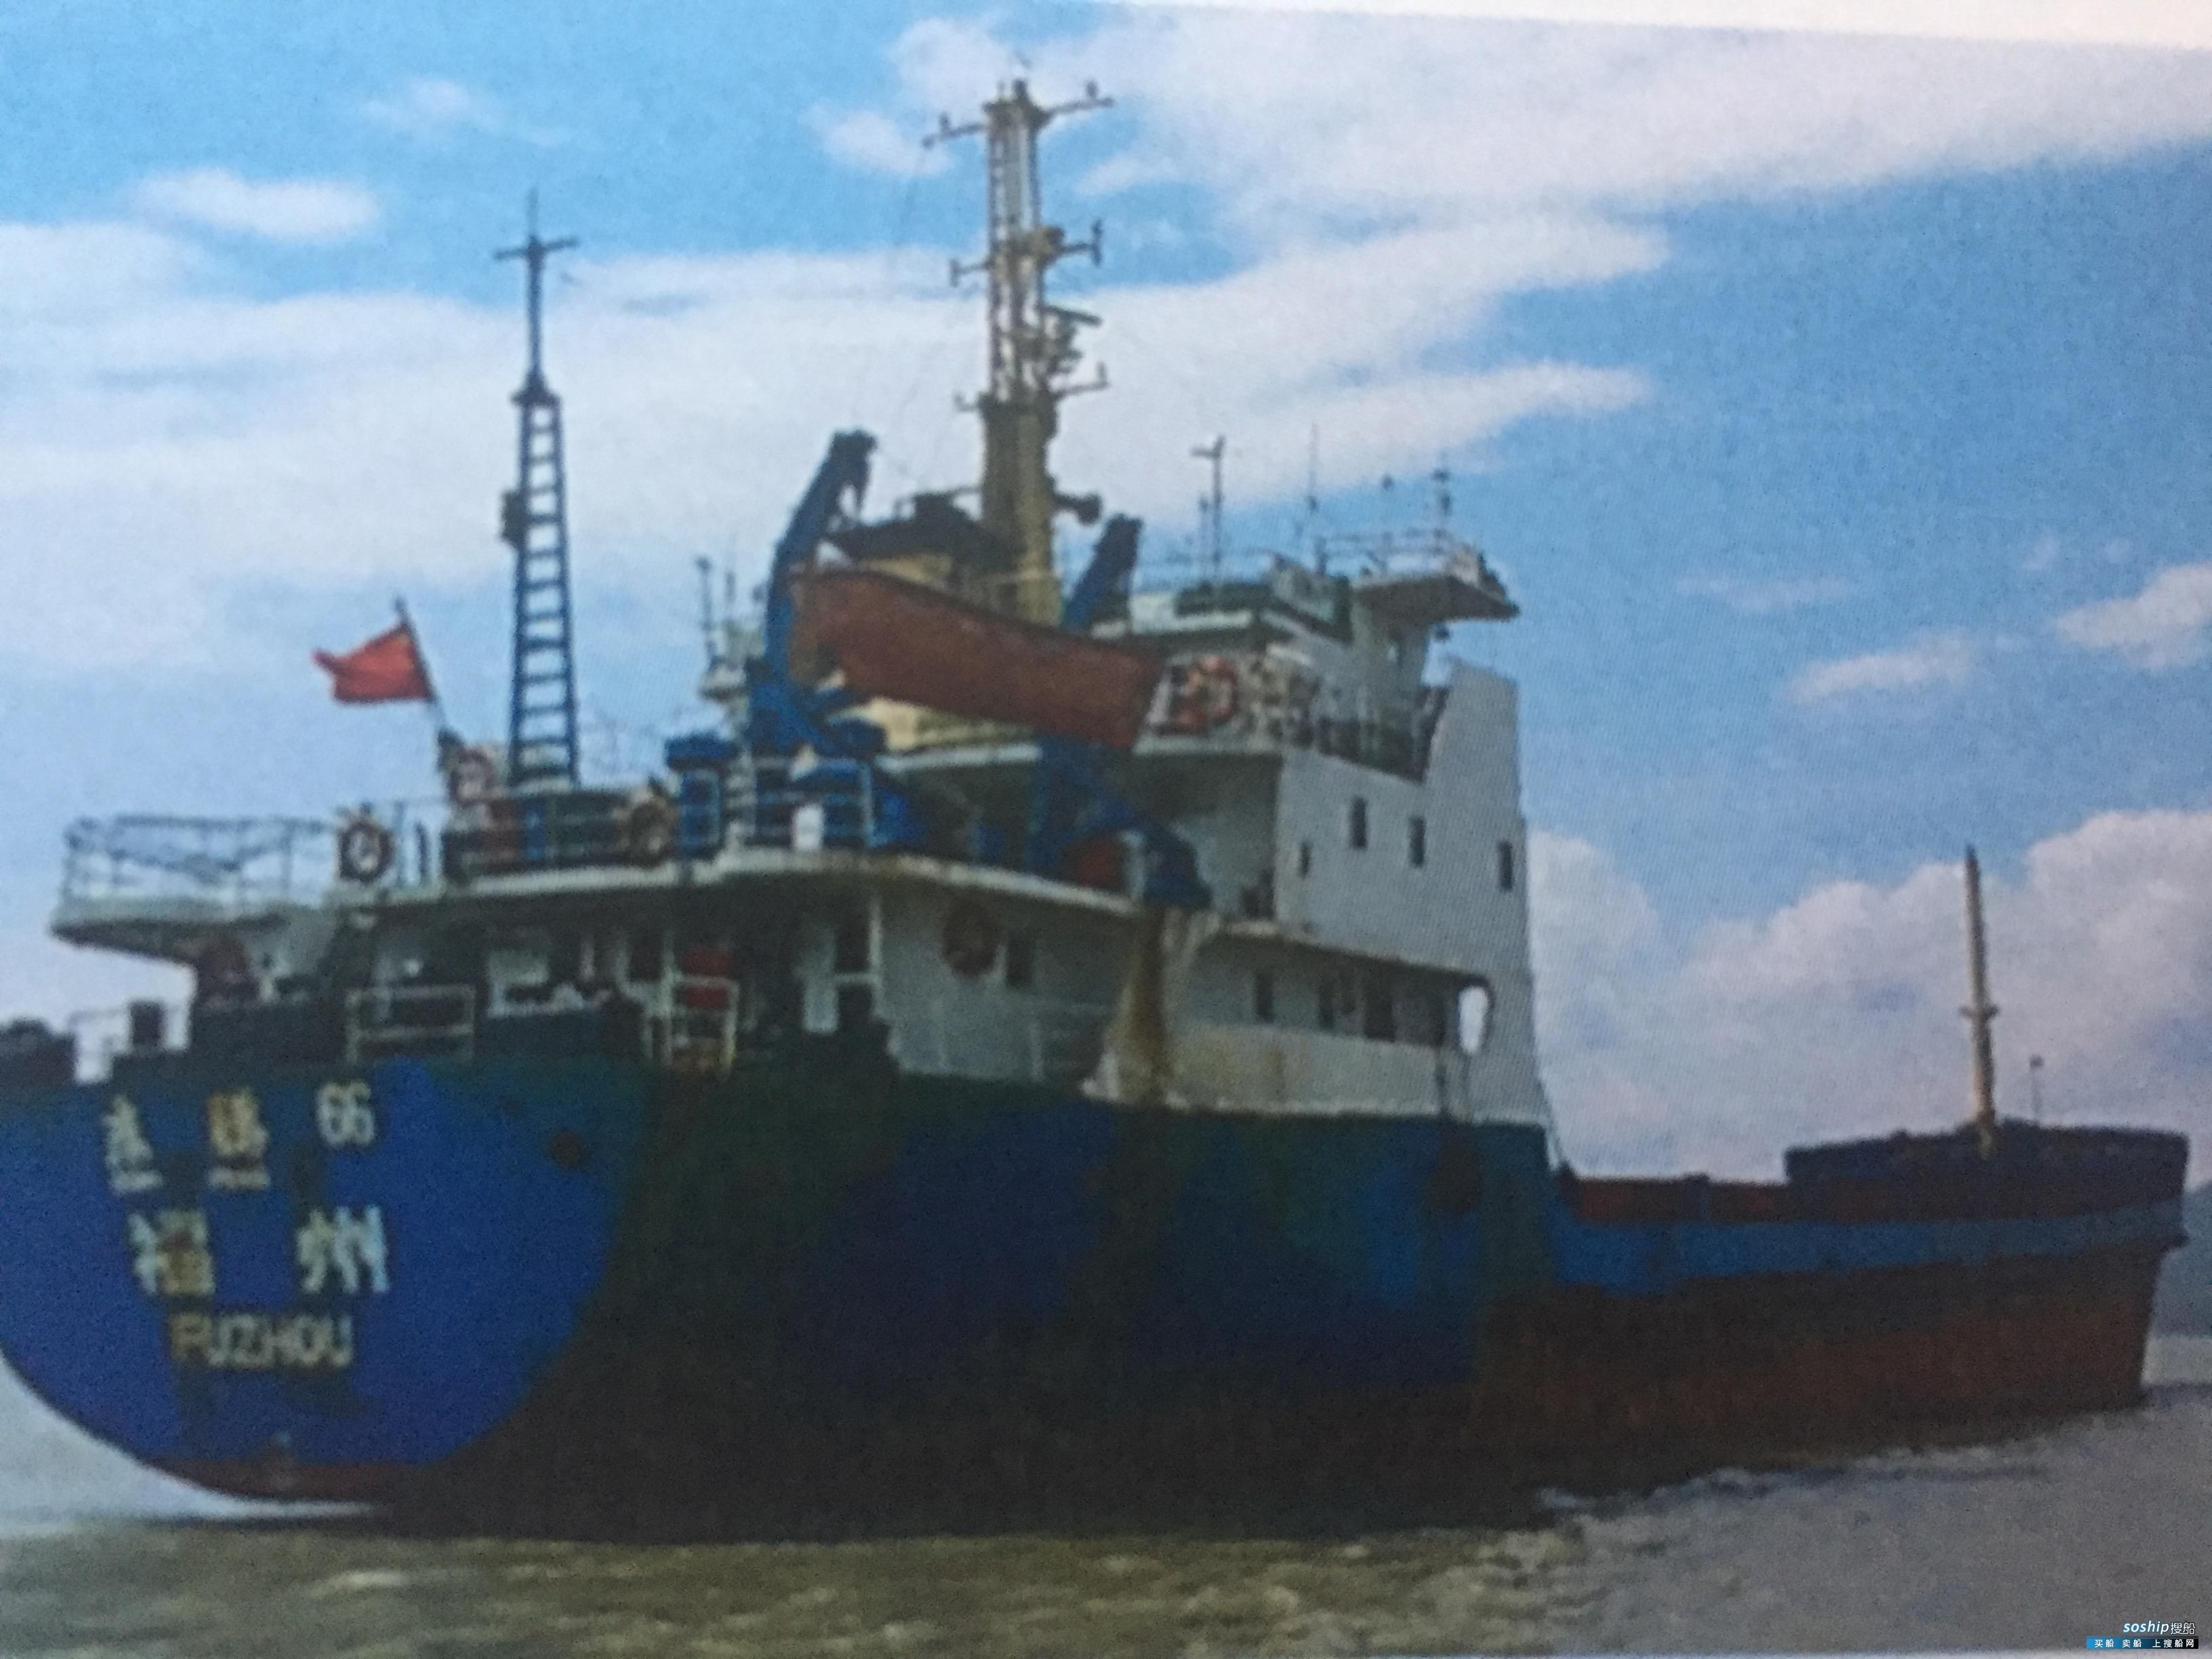 目前最大的集装箱船 出售1508吨集装箱船